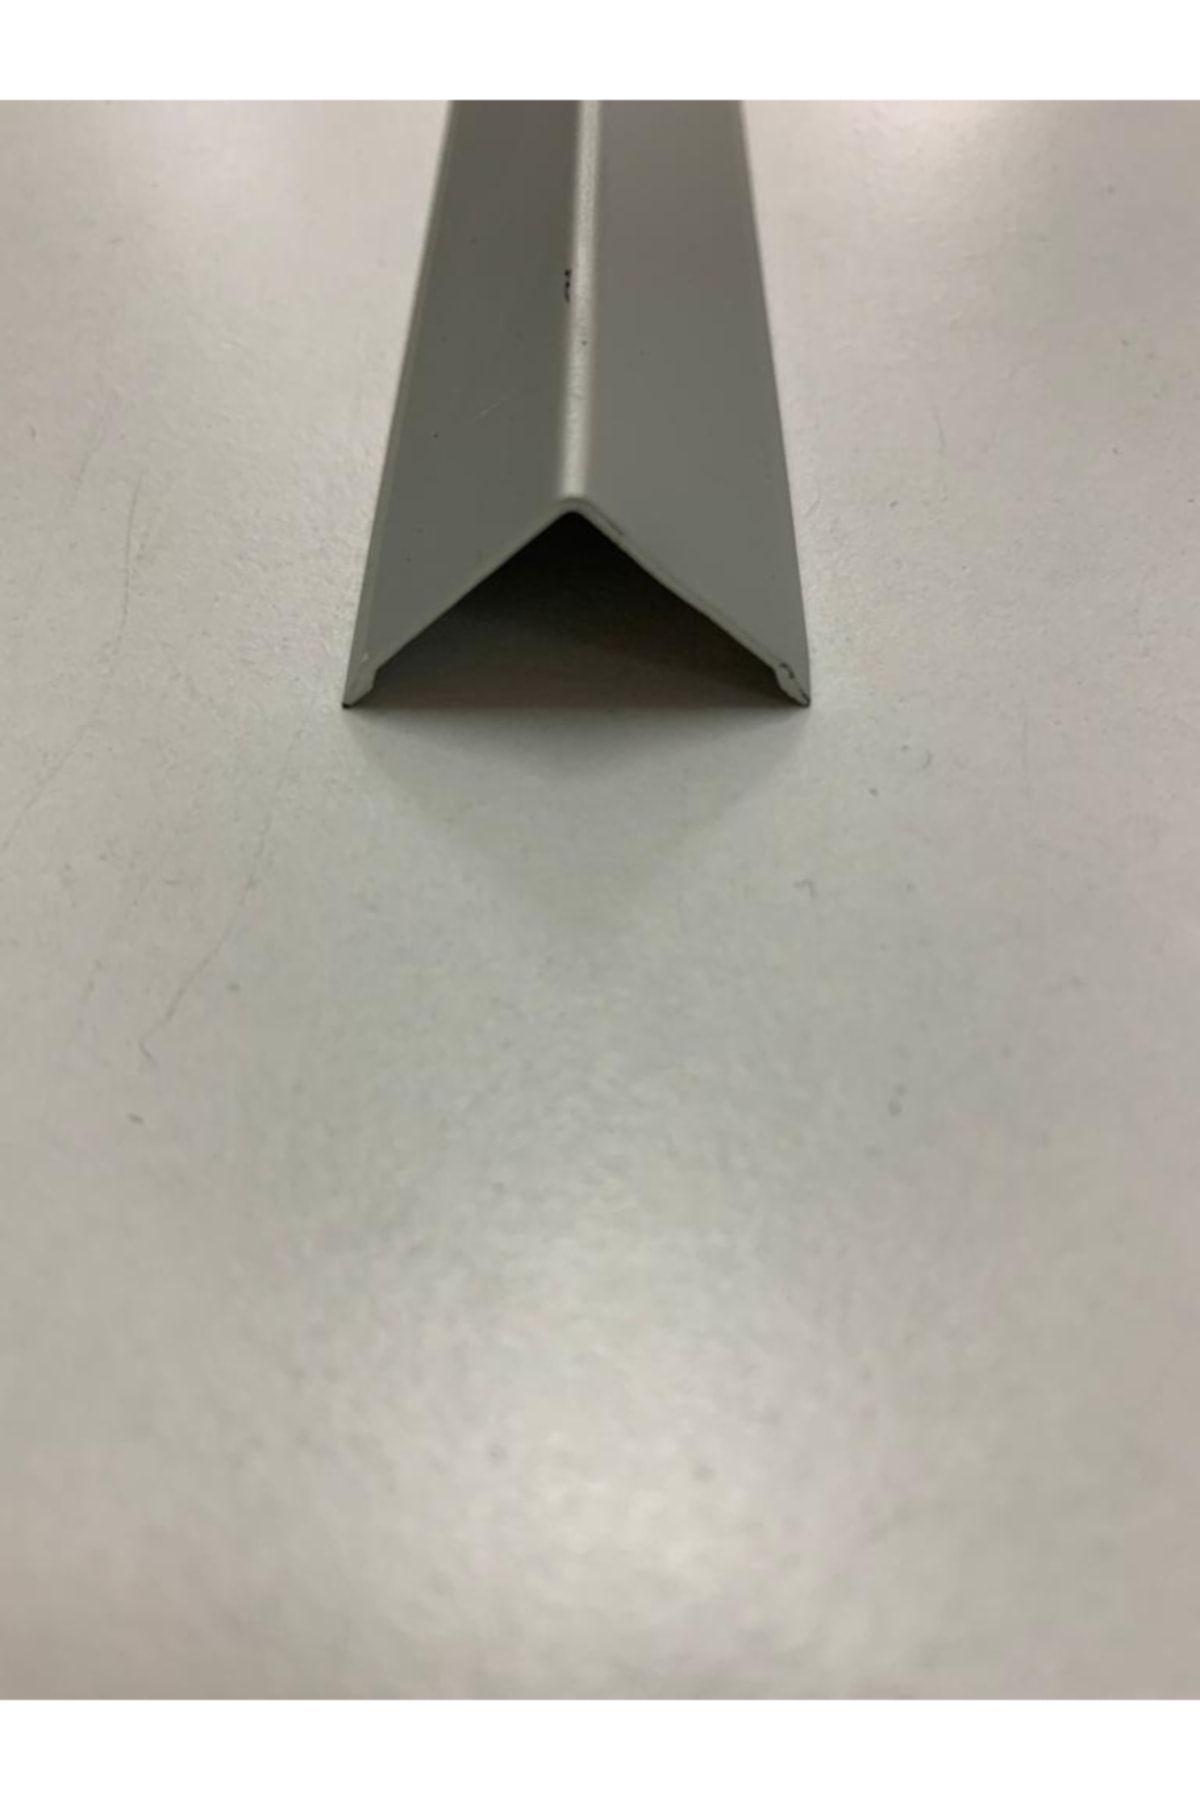 DORA Alüminyum 3x3 L Köşe Profili Mat Gri (100 Cm)